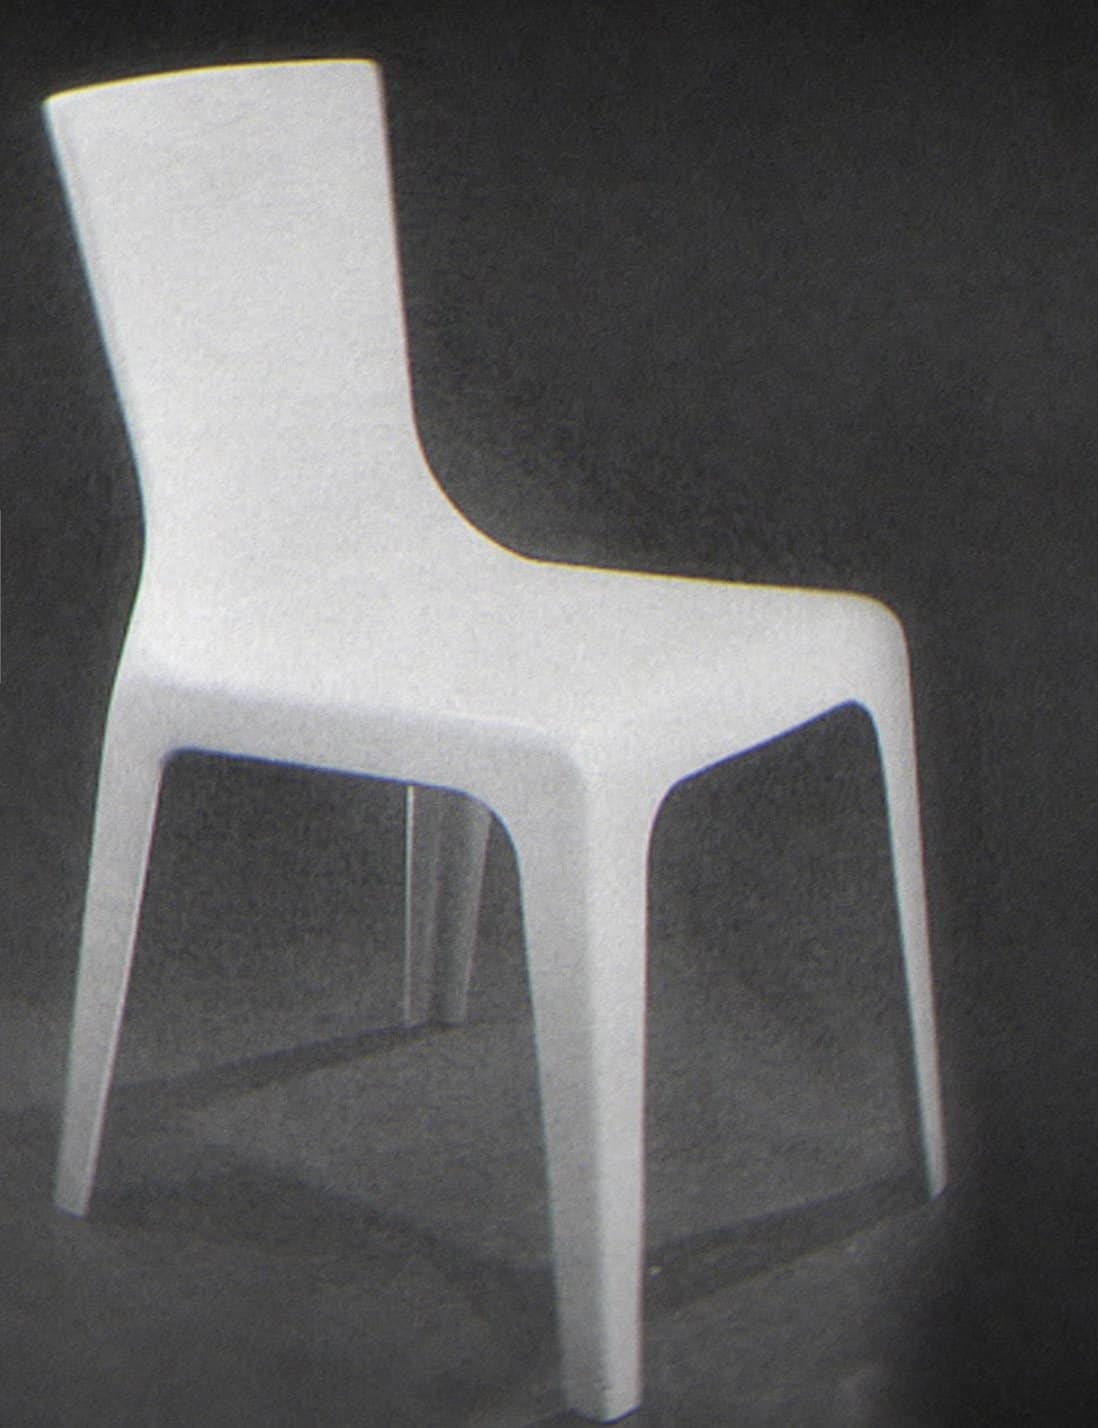 كرسي المصمم الكندي (دي. سي سيمبسون) سنة 1946.